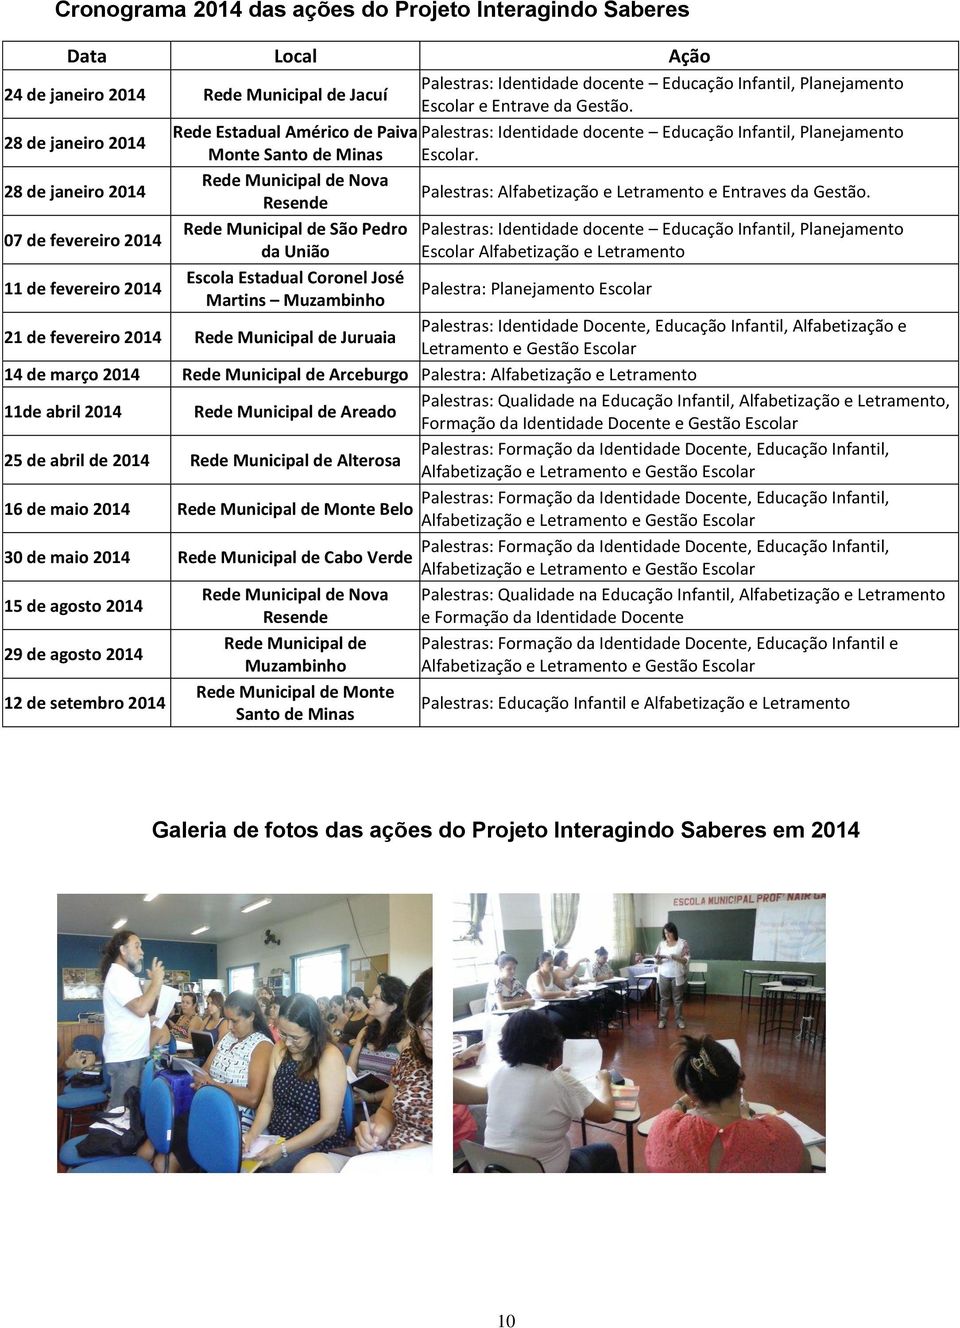 28 de janeiro 2014 Rede Municipal de Nova Resende Palestras: Alfabetização e Letramento e Entraves da Gestão.